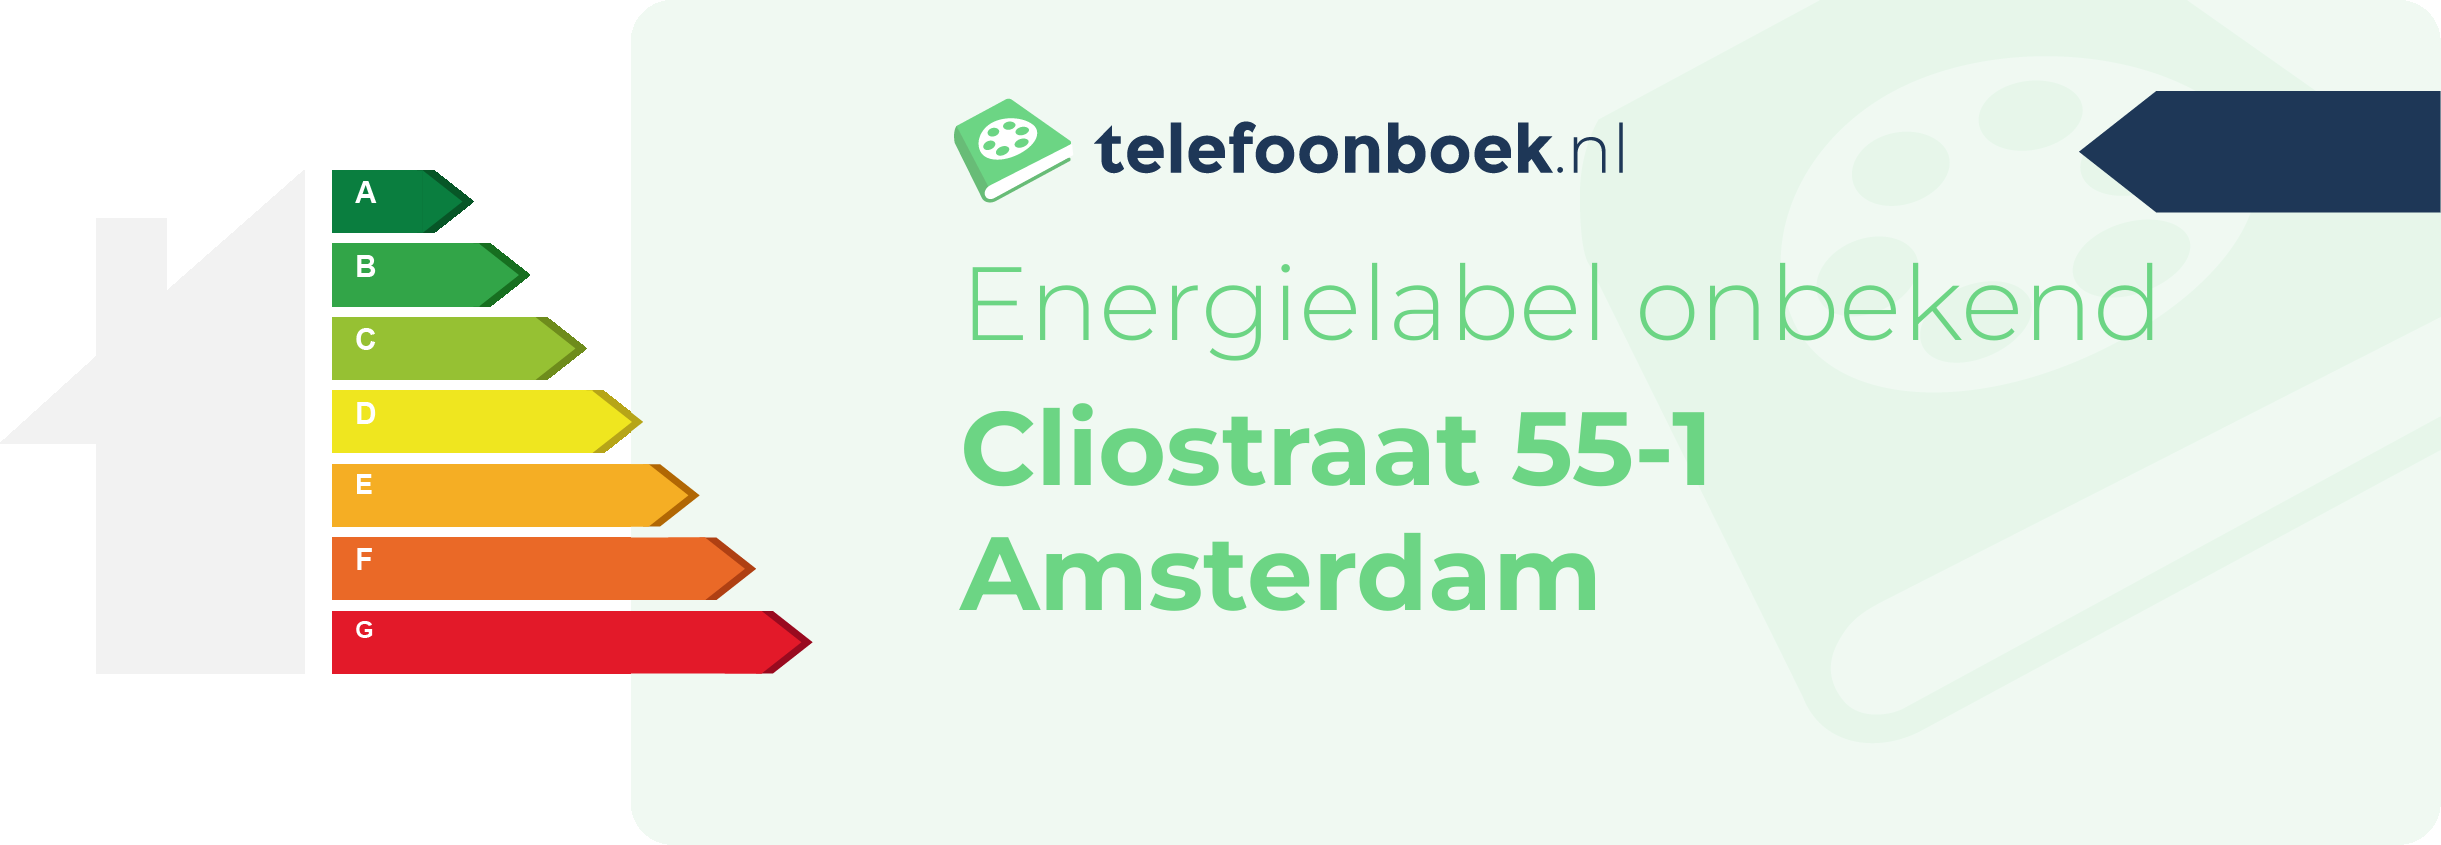 Energielabel Cliostraat 55-1 Amsterdam